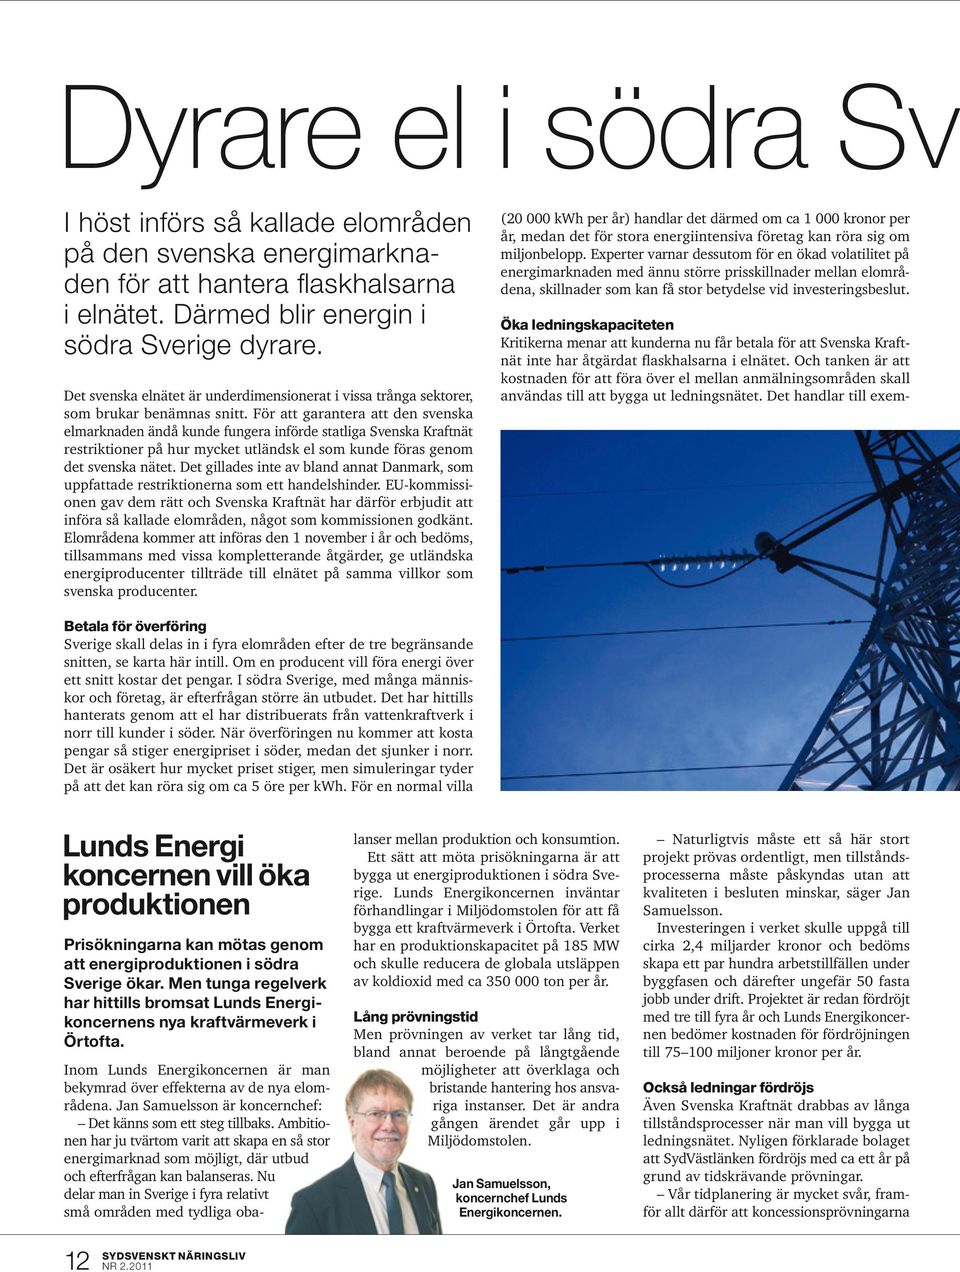 För att garantera att den svenska elmarknaden ändå kunde fungera införde statliga Svenska Kraftnät restriktioner på hur mycket utländsk el som kunde föras genom det svenska nätet.